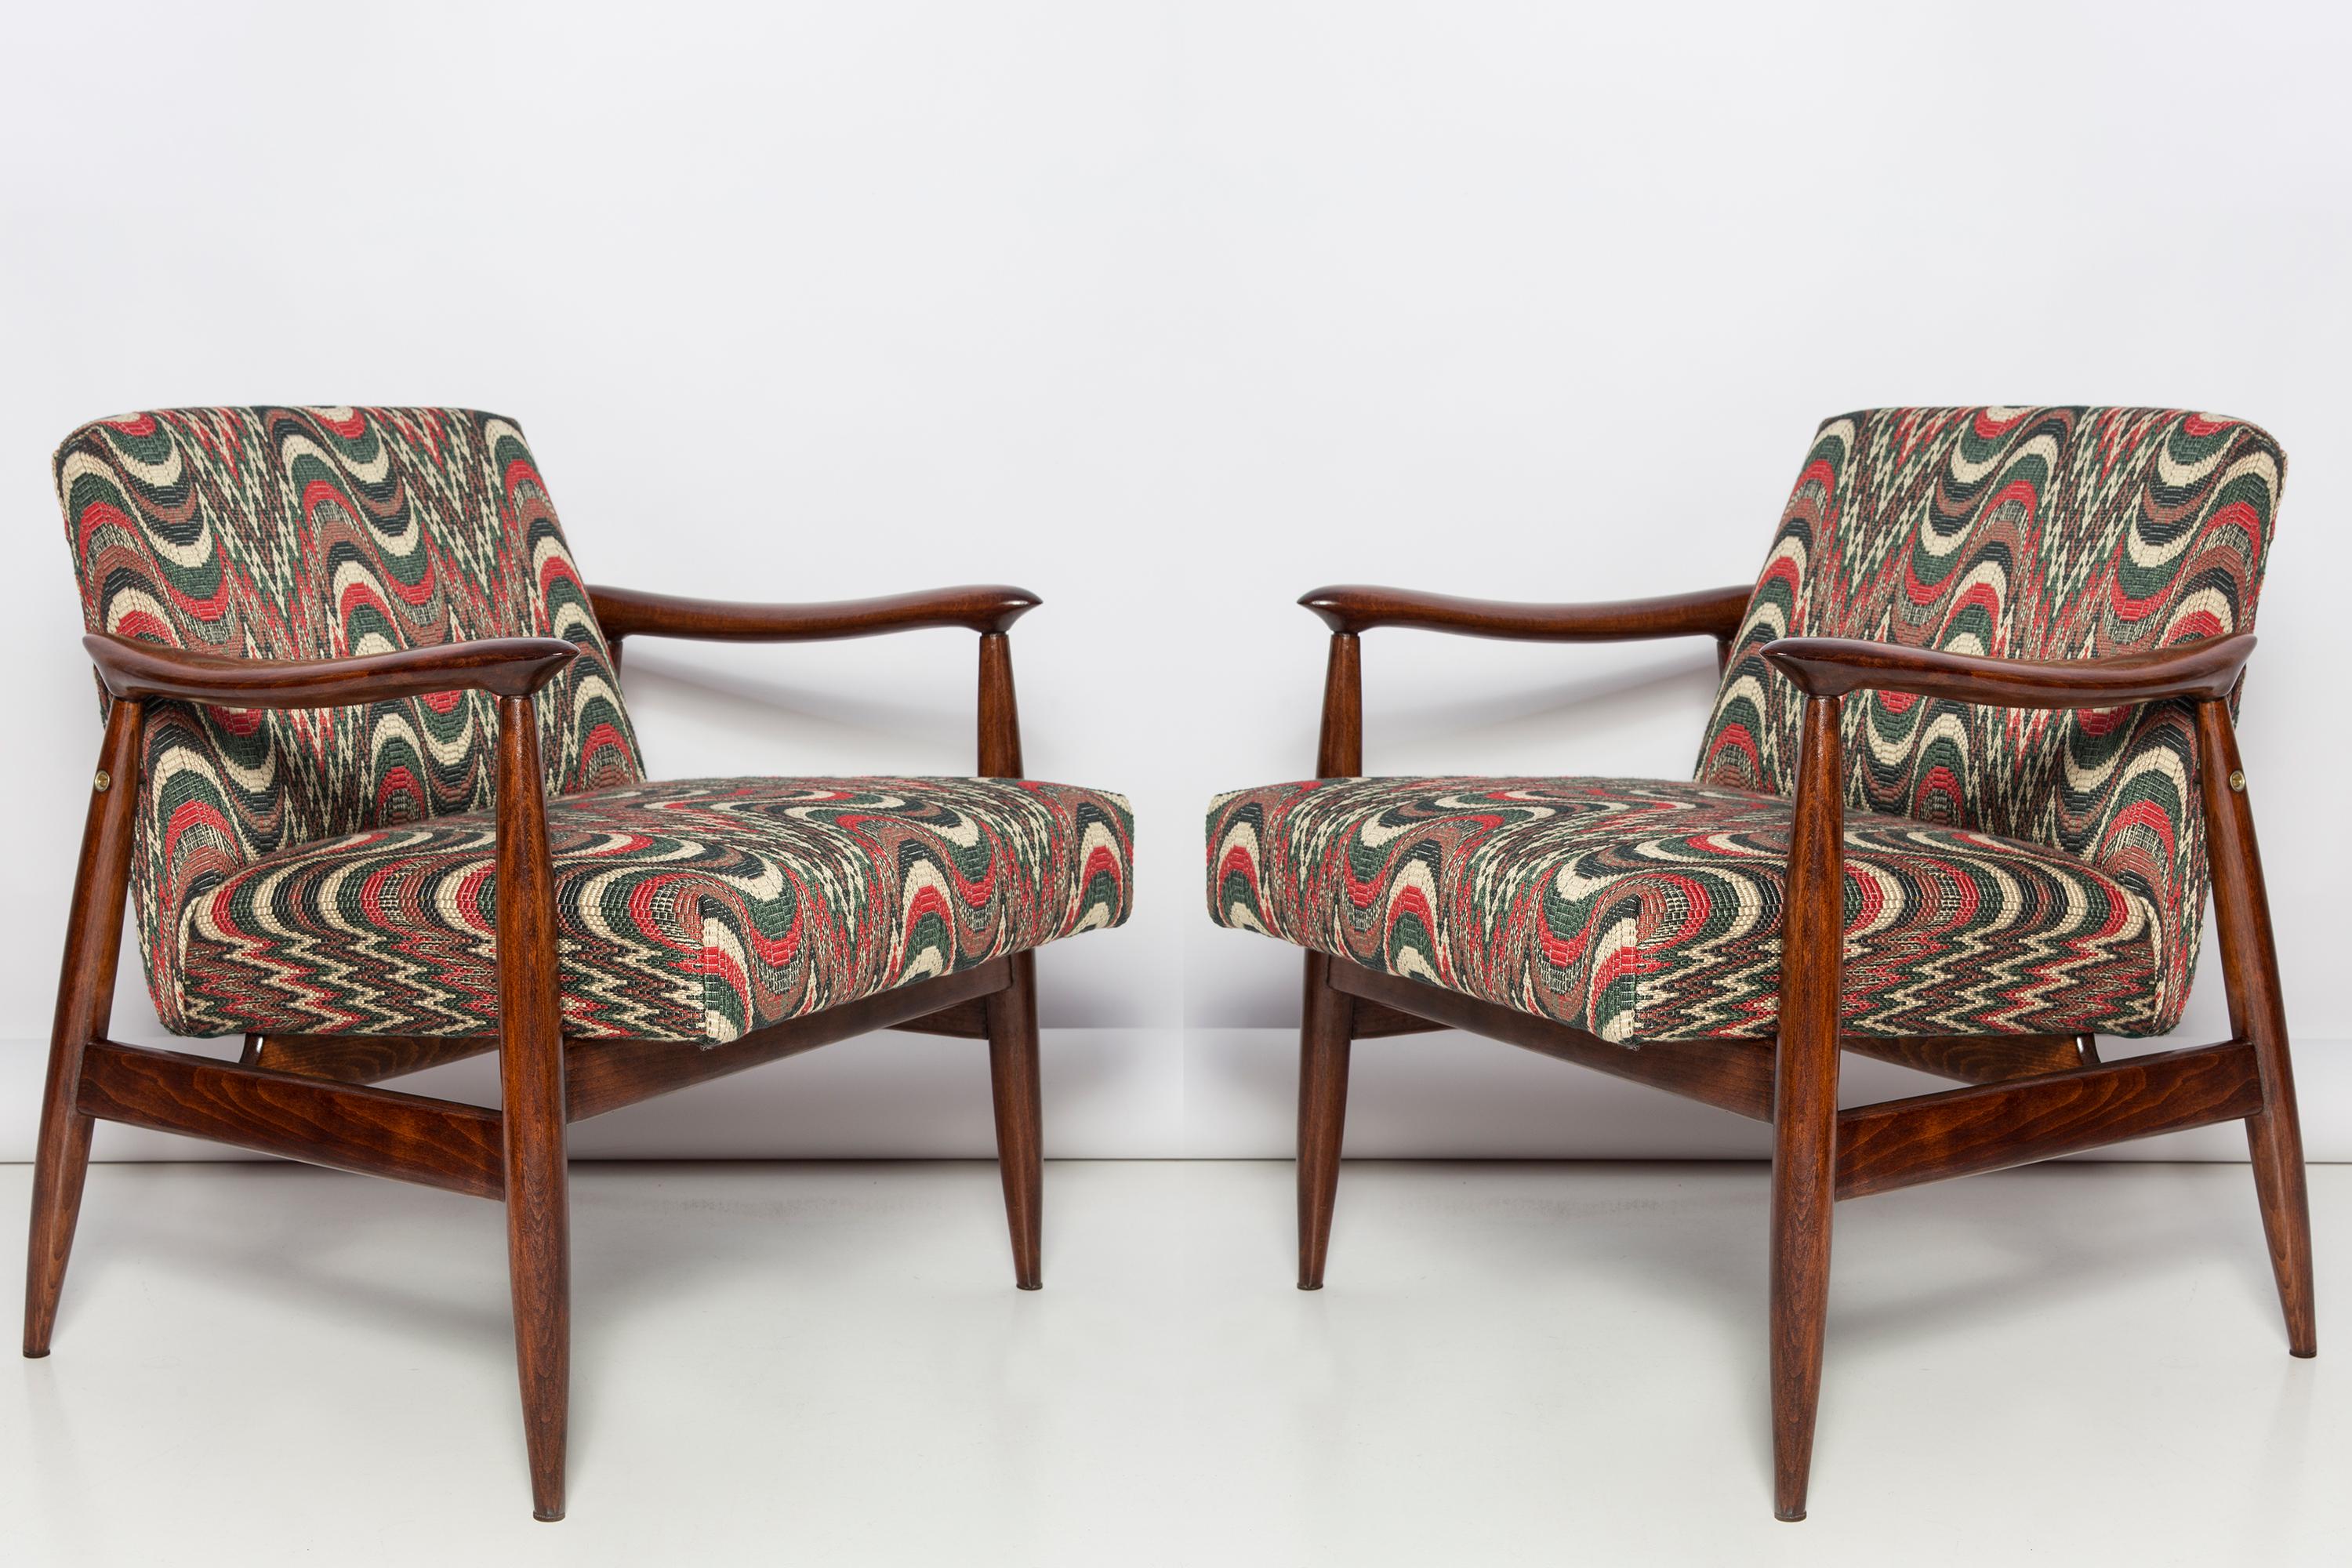 Der GFM-Sessel ist eine Ikone des polnischen Designs der PRL-Zeit.

Der berühmte Sessel wurde 1962 von dem polnischen Innenarchitekten und Möbeldesigner Edmund Homa entworfen. Produziert in der Niederschlesischen Möbelfabrik in Swiebodzice.

Dieses